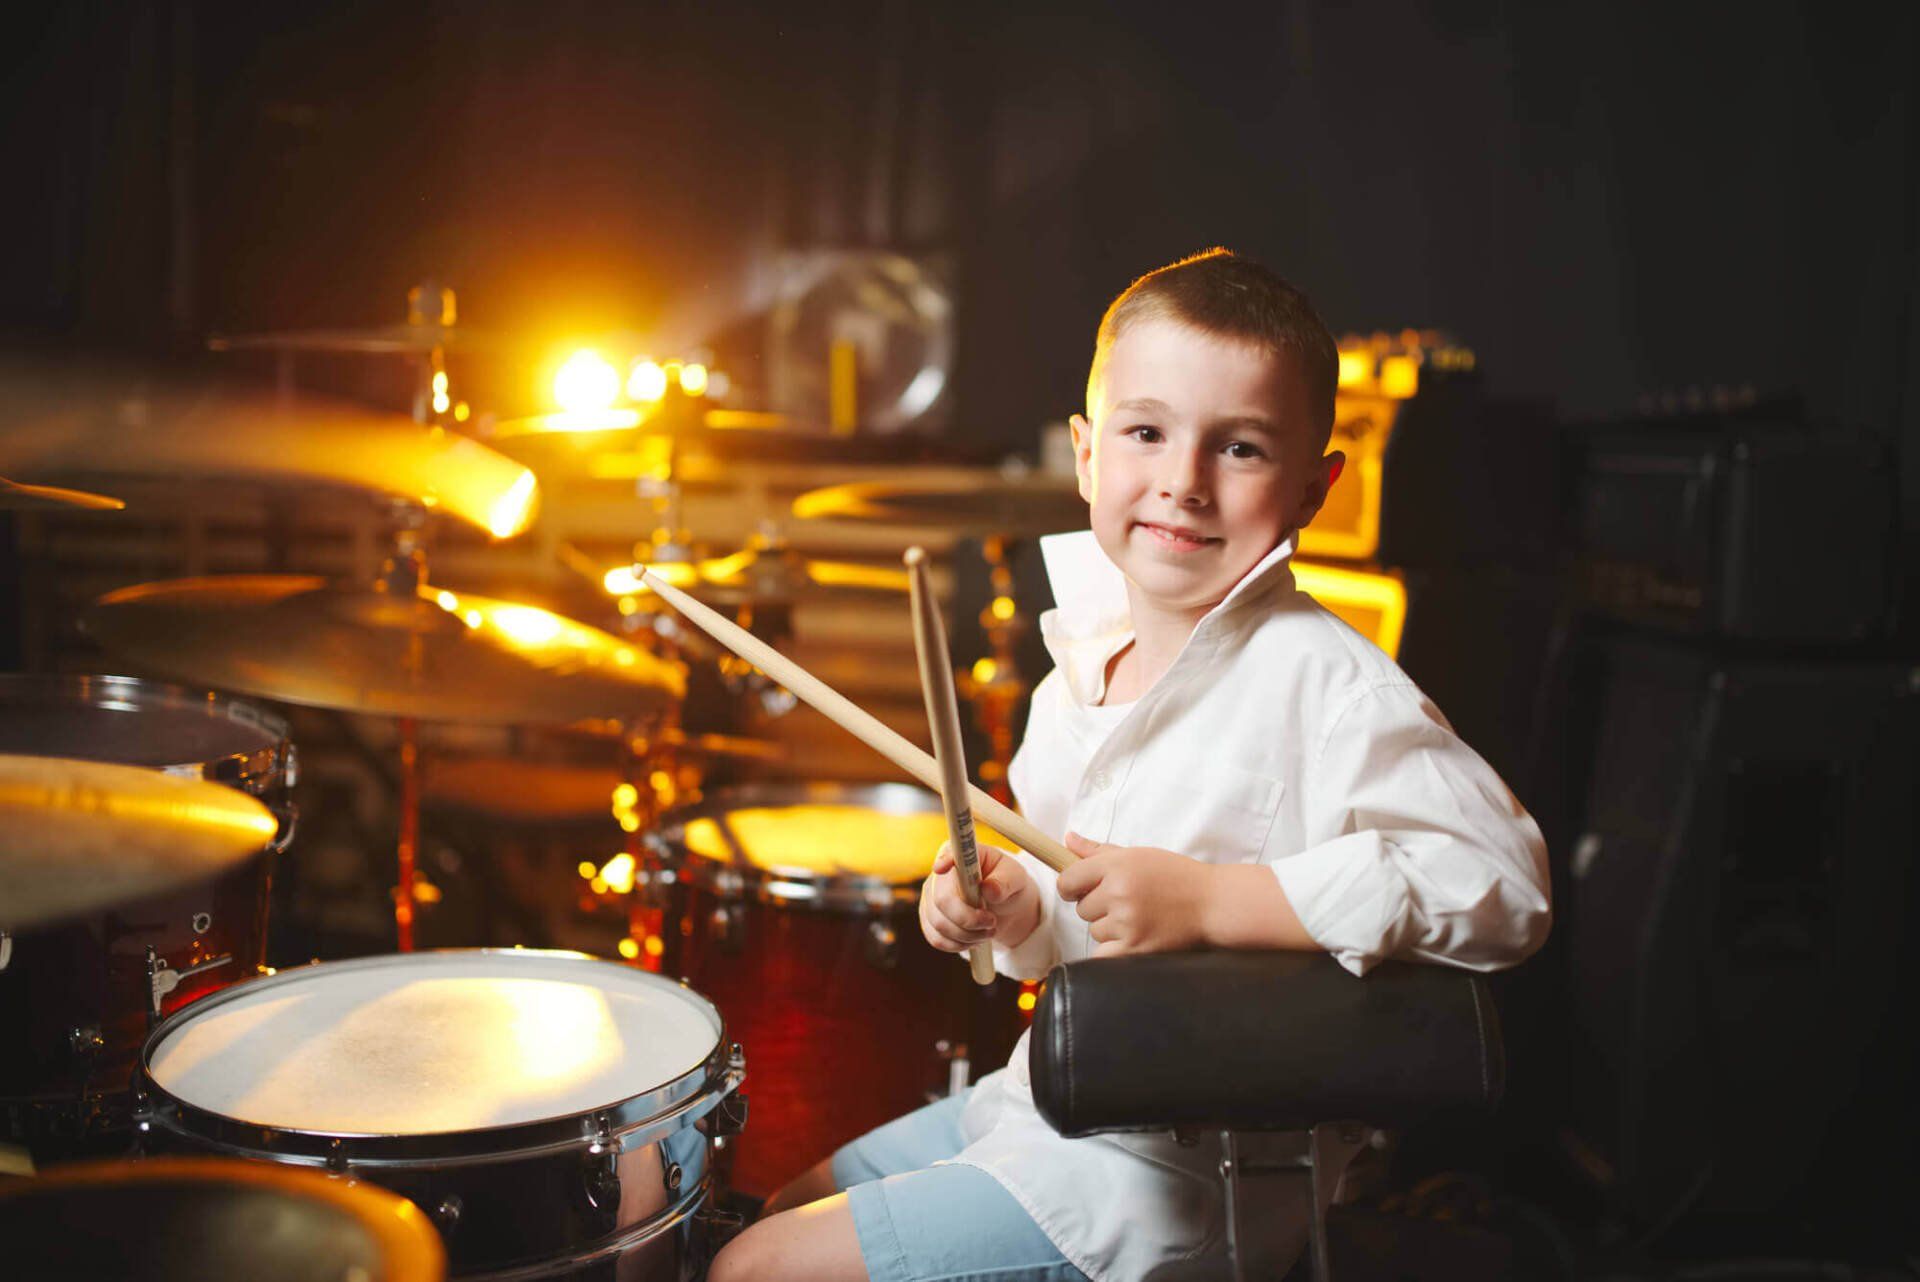 שיפור ביטחון עצמי אצל ילדים עם מוזיקה